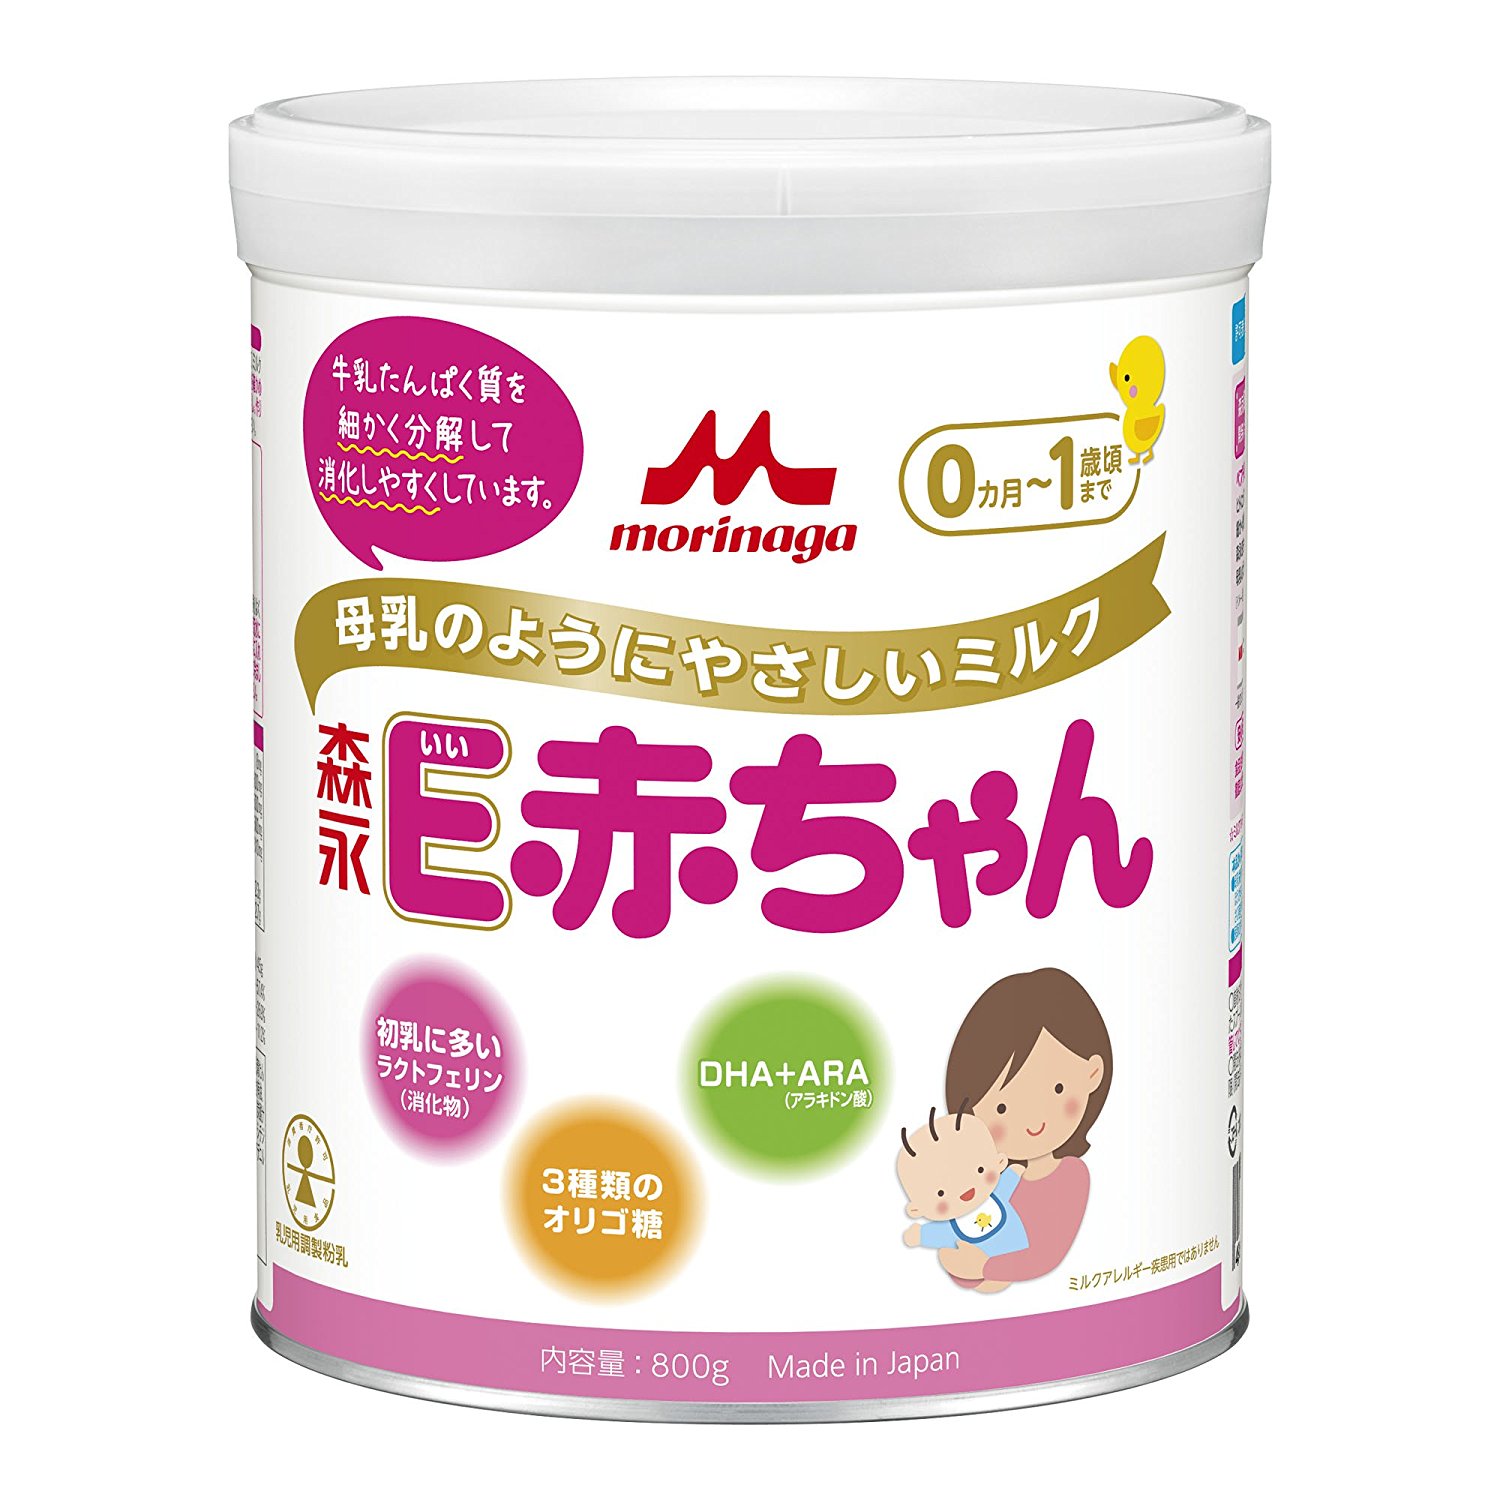 Sữa Morinaga E- Akachan số 0, Sữa morinaga cho trẻ non tháng, Sữa Morinaga E-Akachan số 0 cho trẻ sinh non